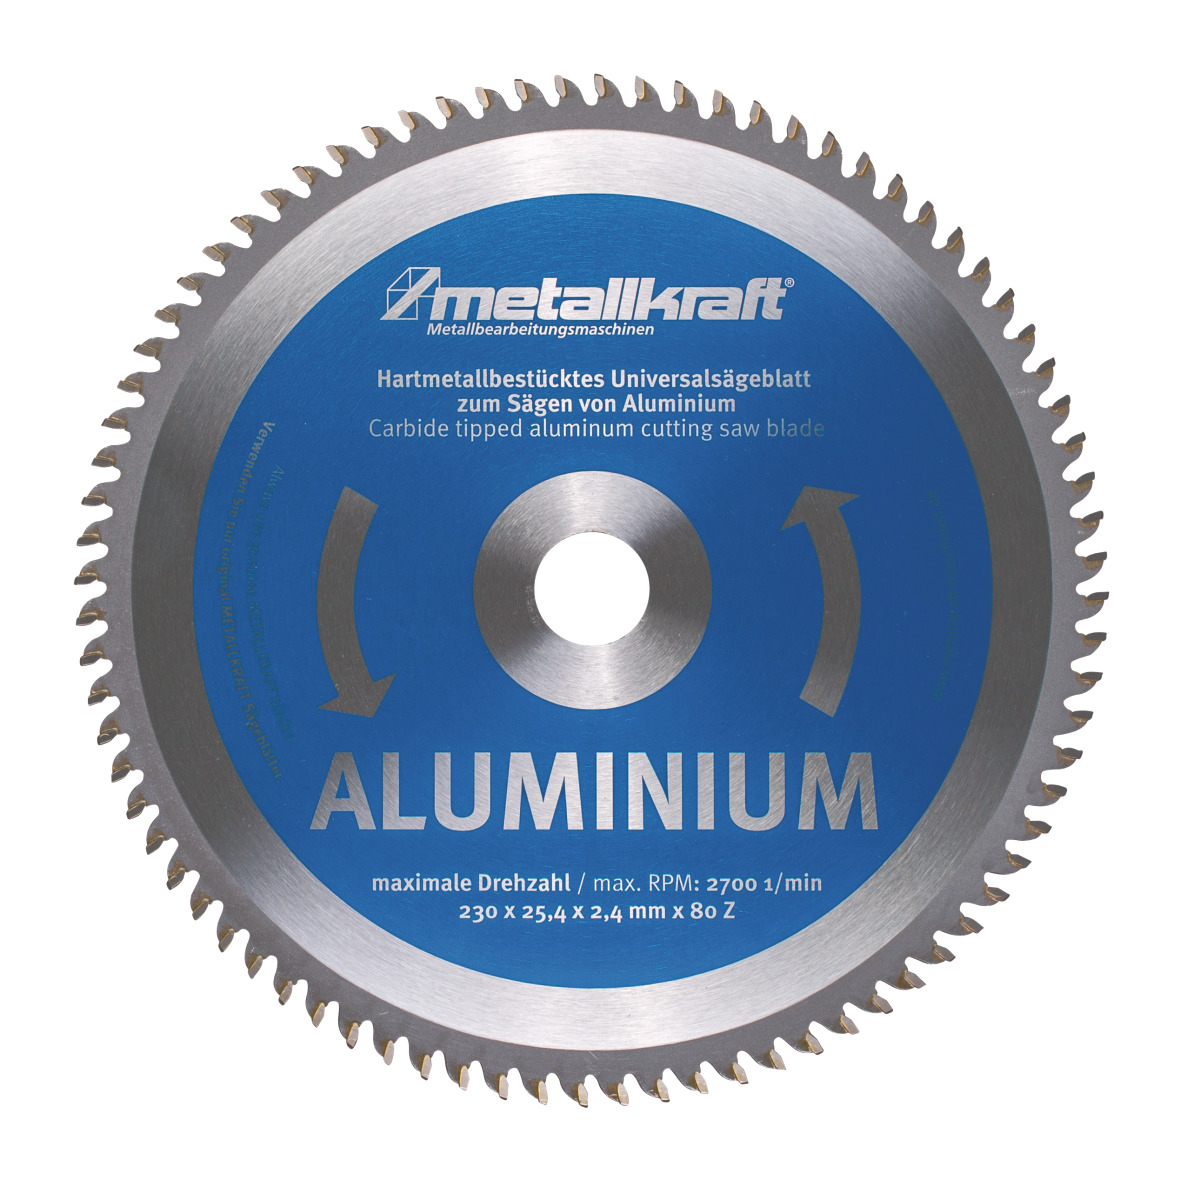 Imagen de Sägeblatt für Aluminium Metallkraft Ø 230 x 2,4 x 25,4 mm